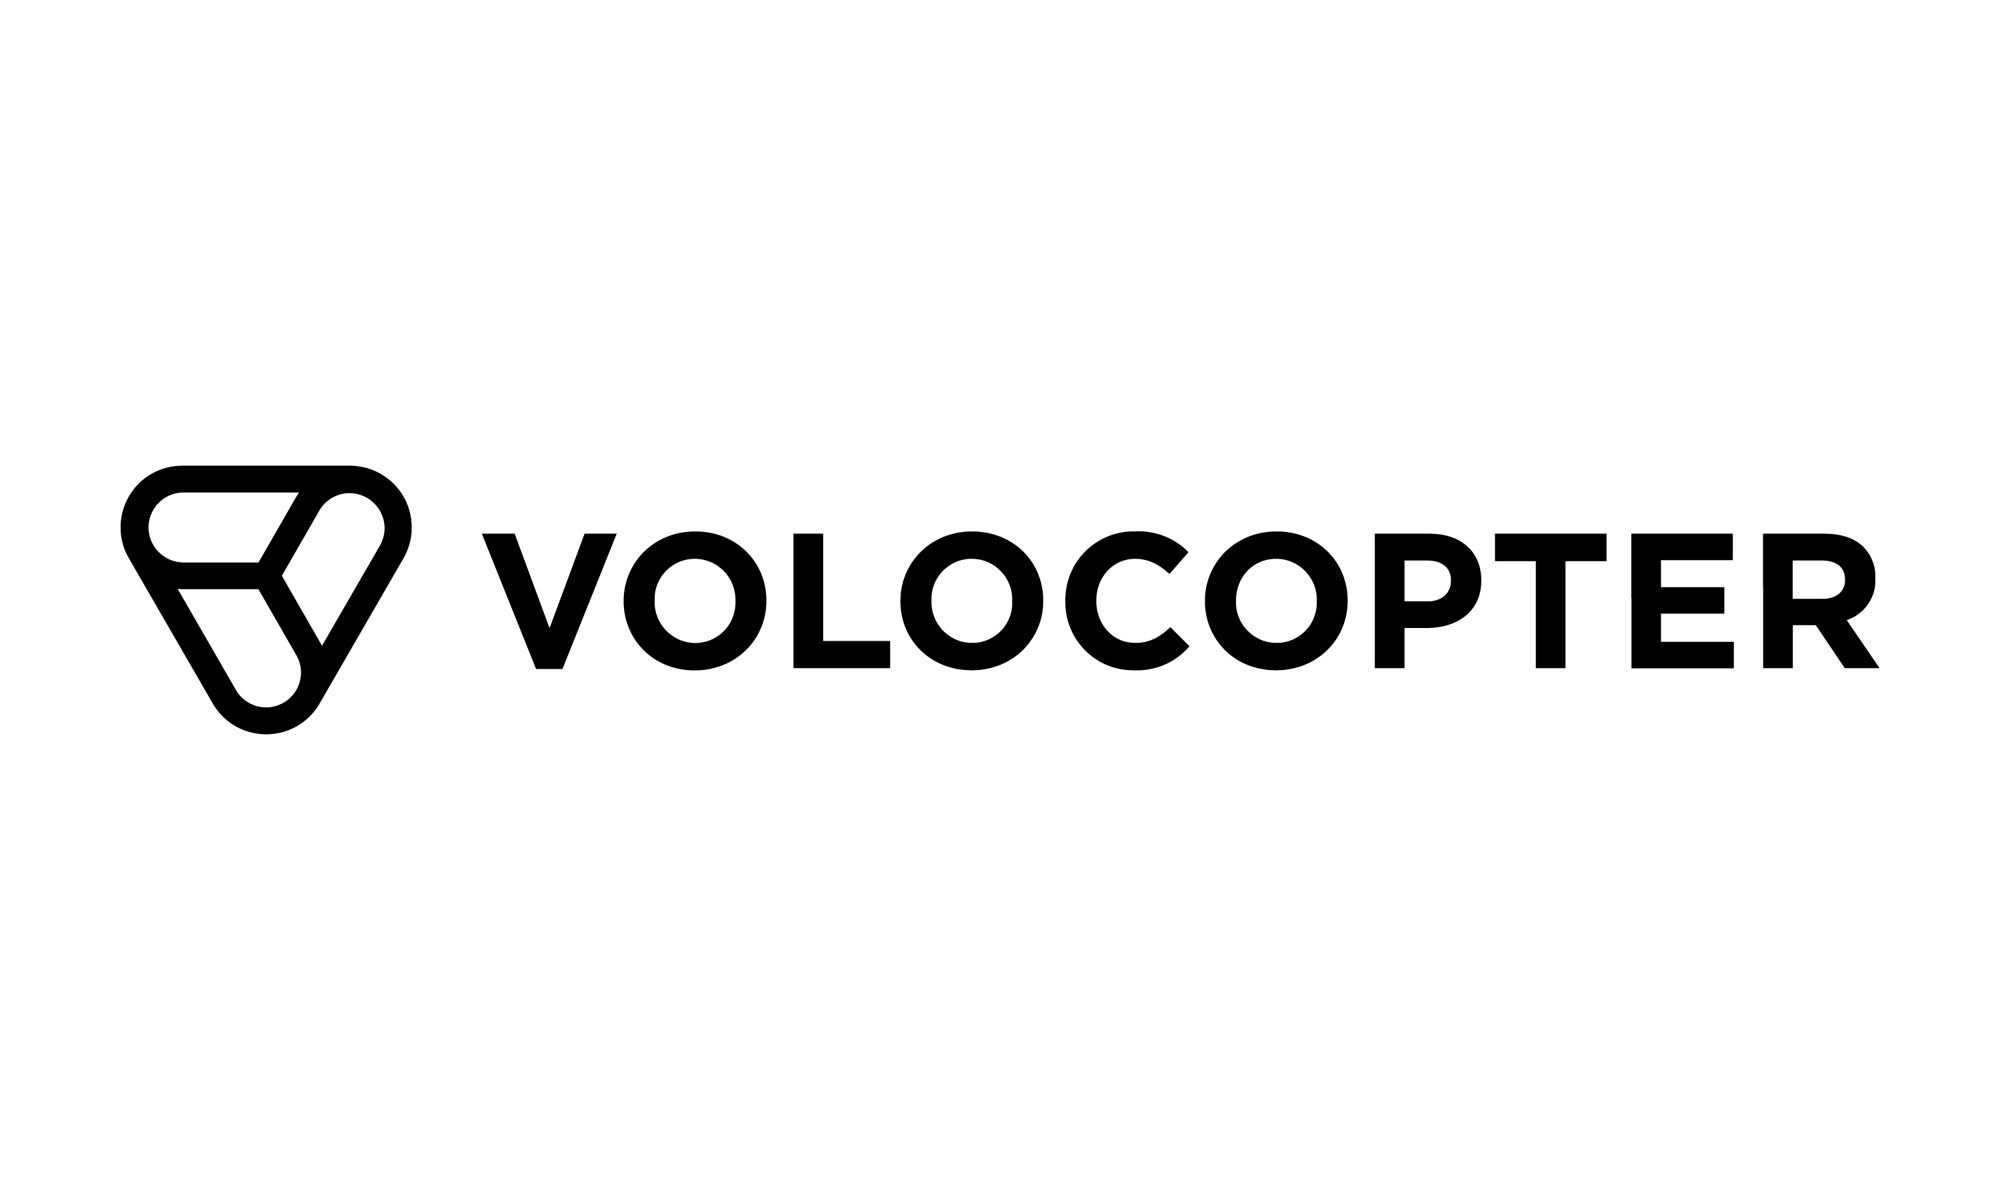 Volocopter company logo